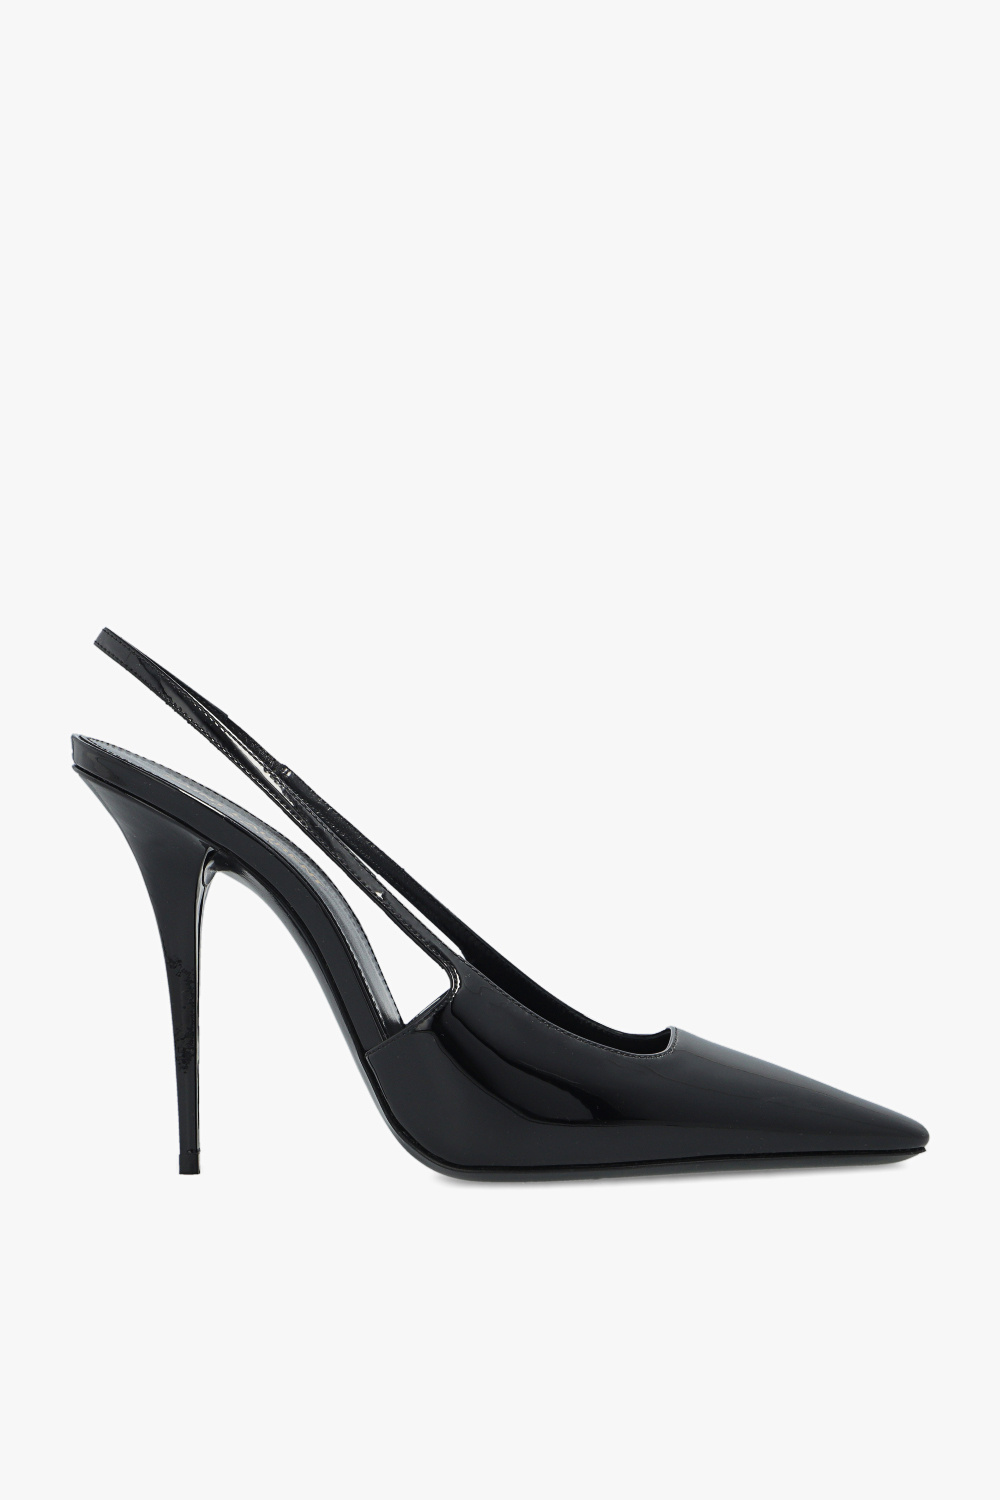 Saint Laurent 'Blade’ pumps | Women's Shoes | Vitkac